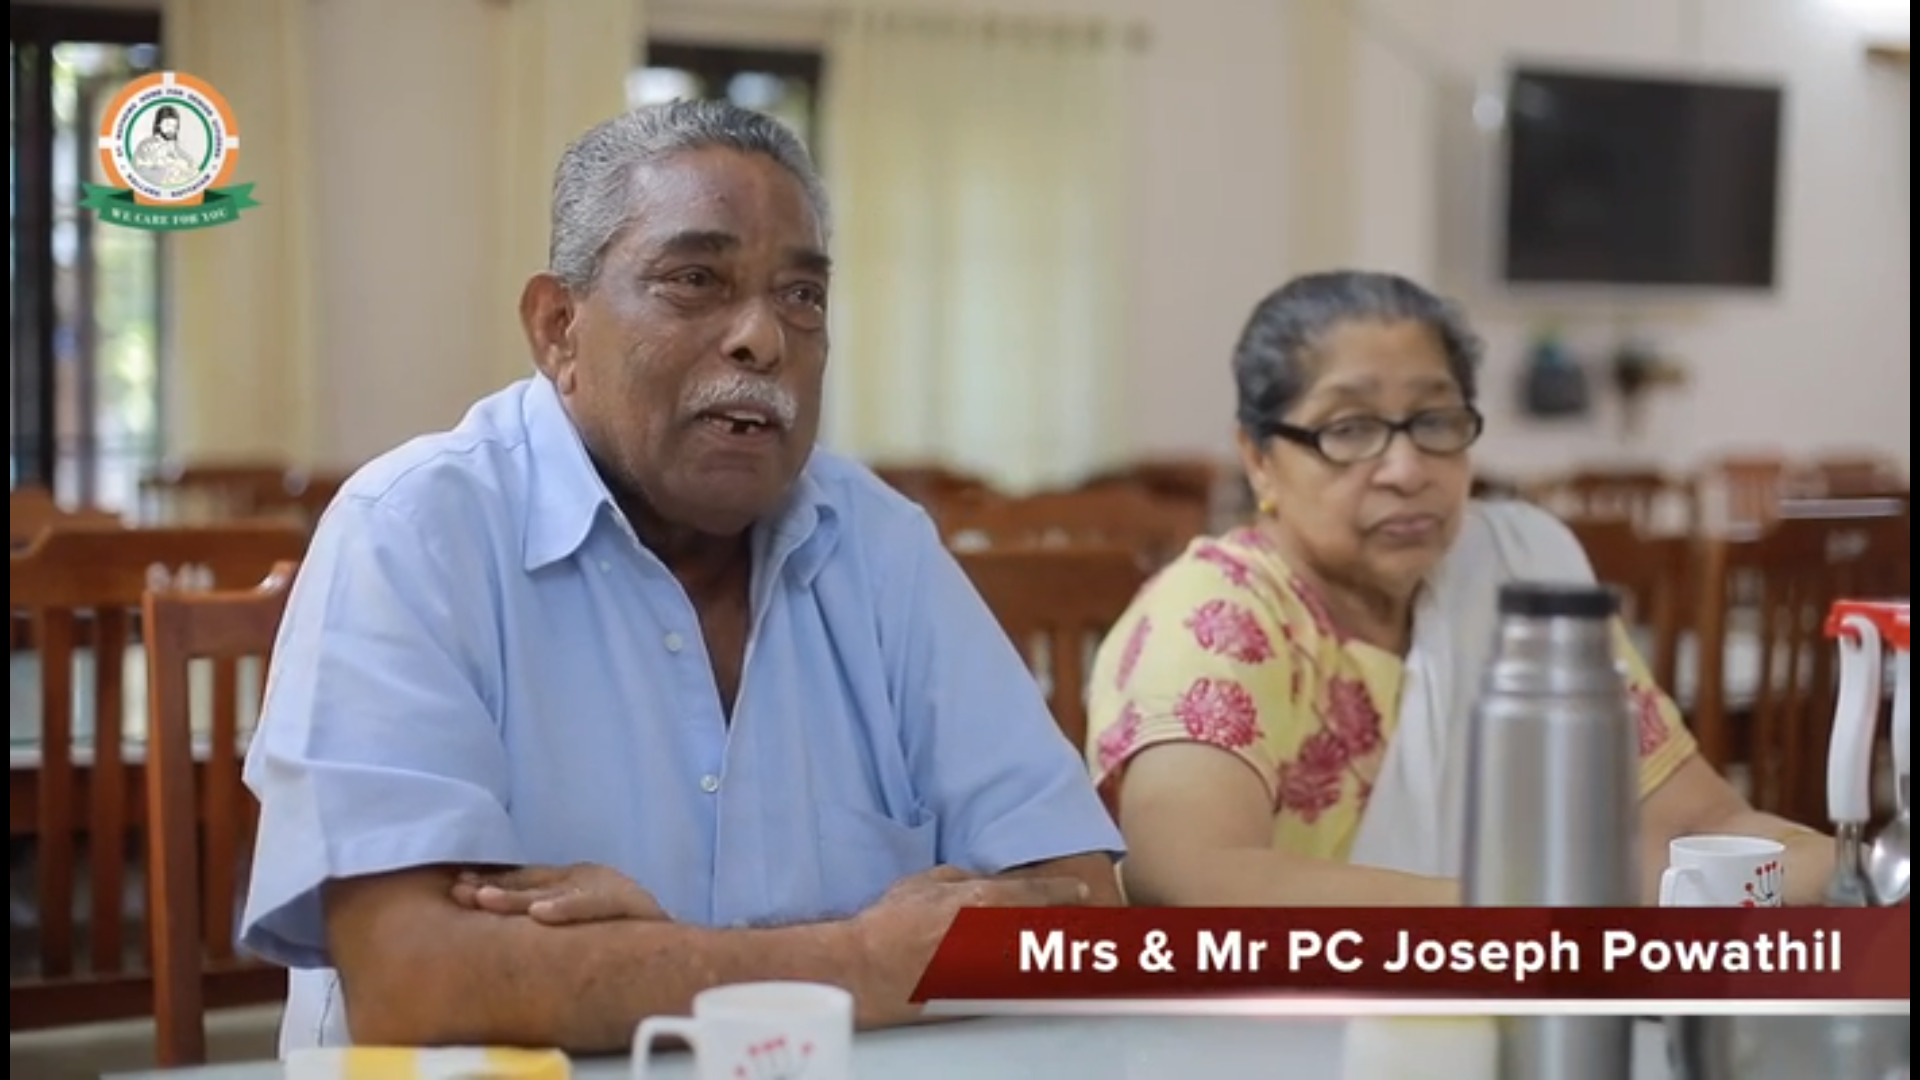 Mr. & Mrs. PC Joseph Powathil